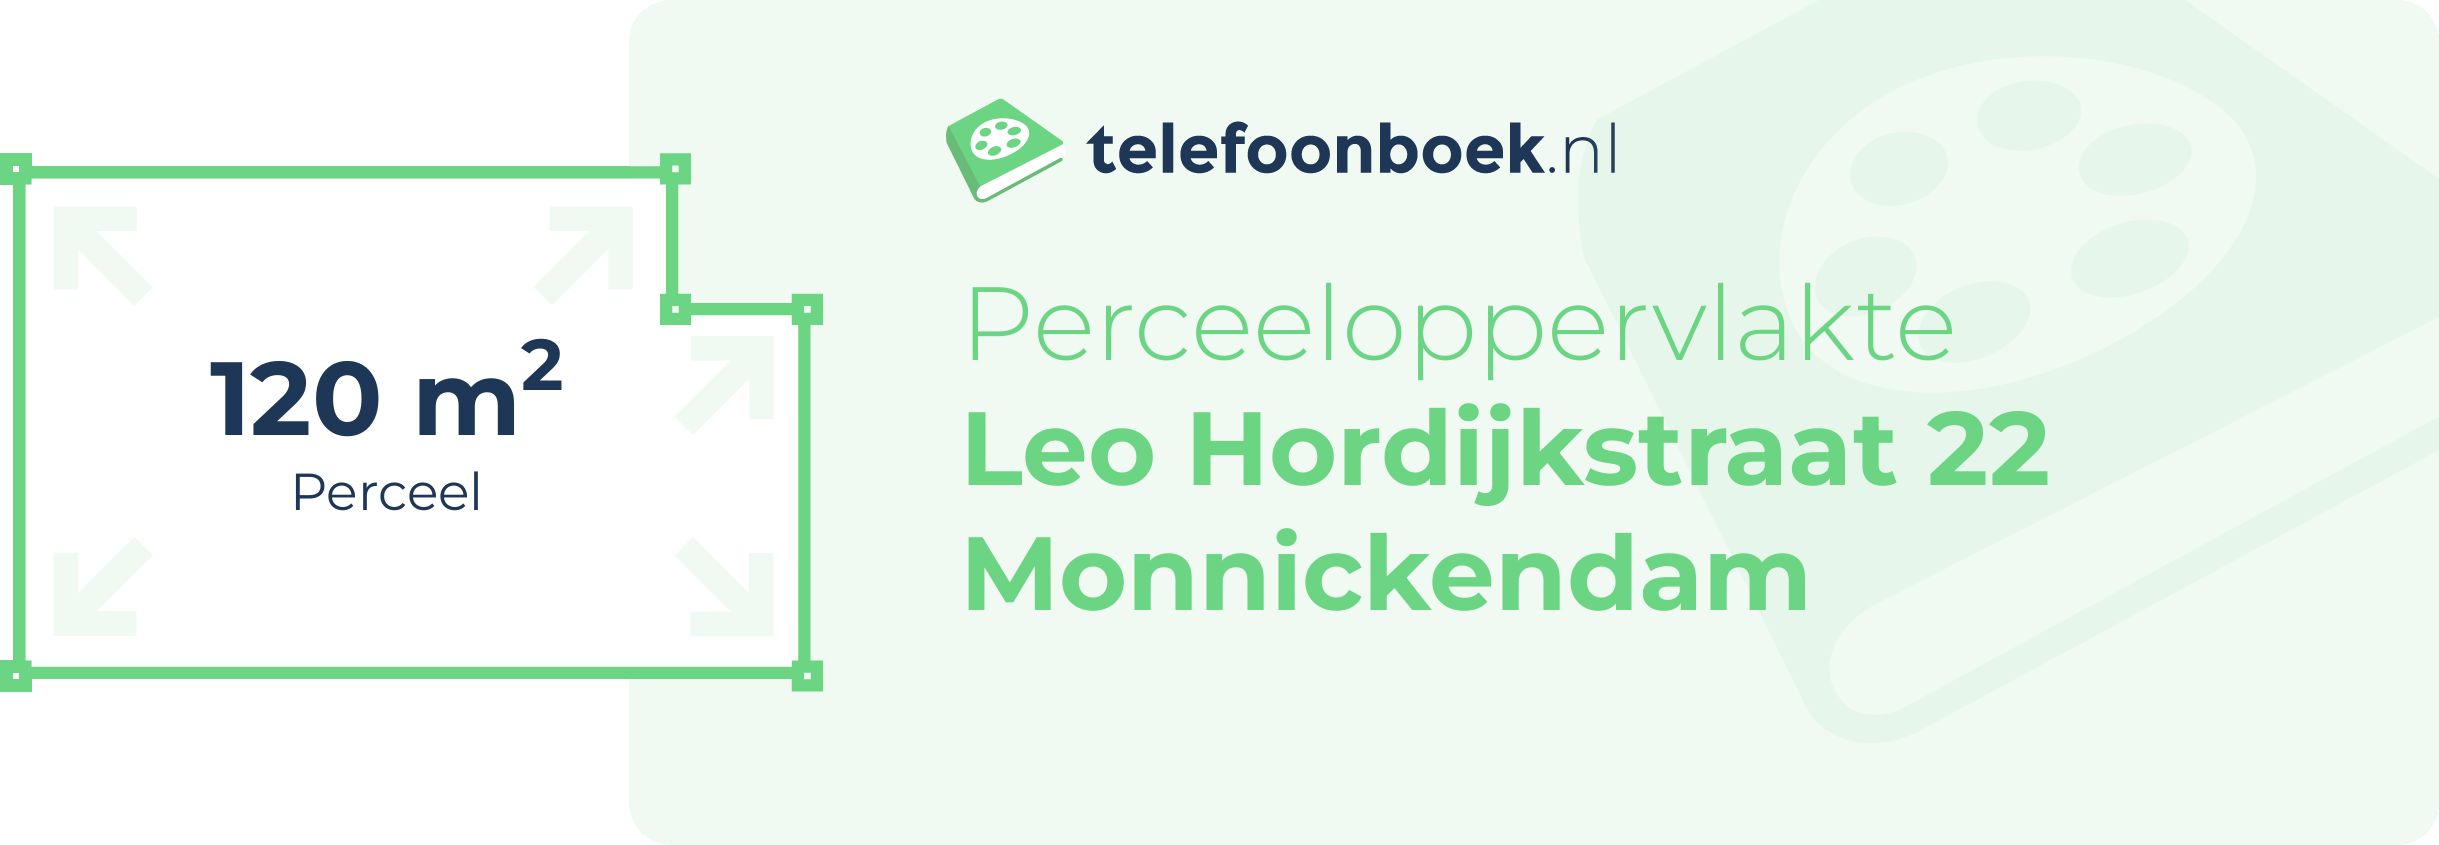 Perceeloppervlakte Leo Hordijkstraat 22 Monnickendam